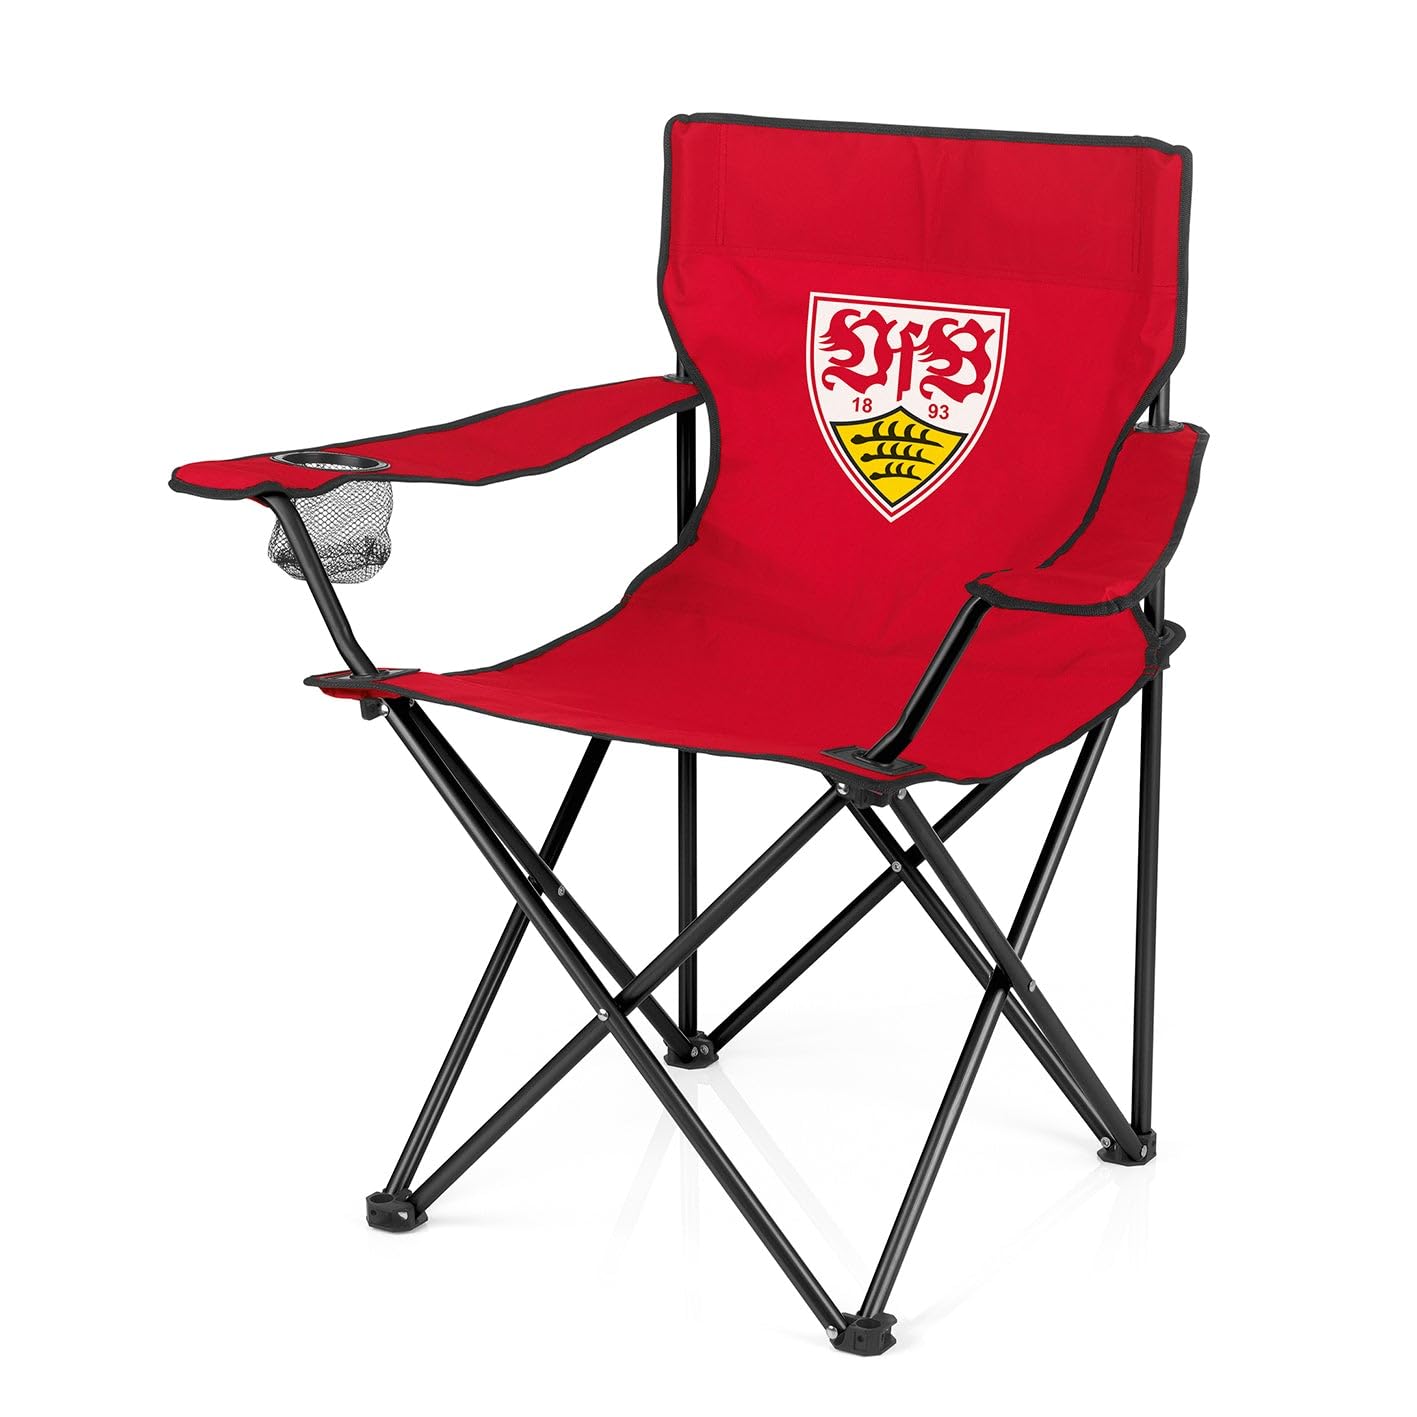 VfB Stuttgart Campingstuhl faltbar - 80x50 cm | Ideal für Festivals, Angelausflüge, Strand u.v.m. | Wasserabweisend & robust | Belastbar bis max. 100 kg [rot mit Logo]